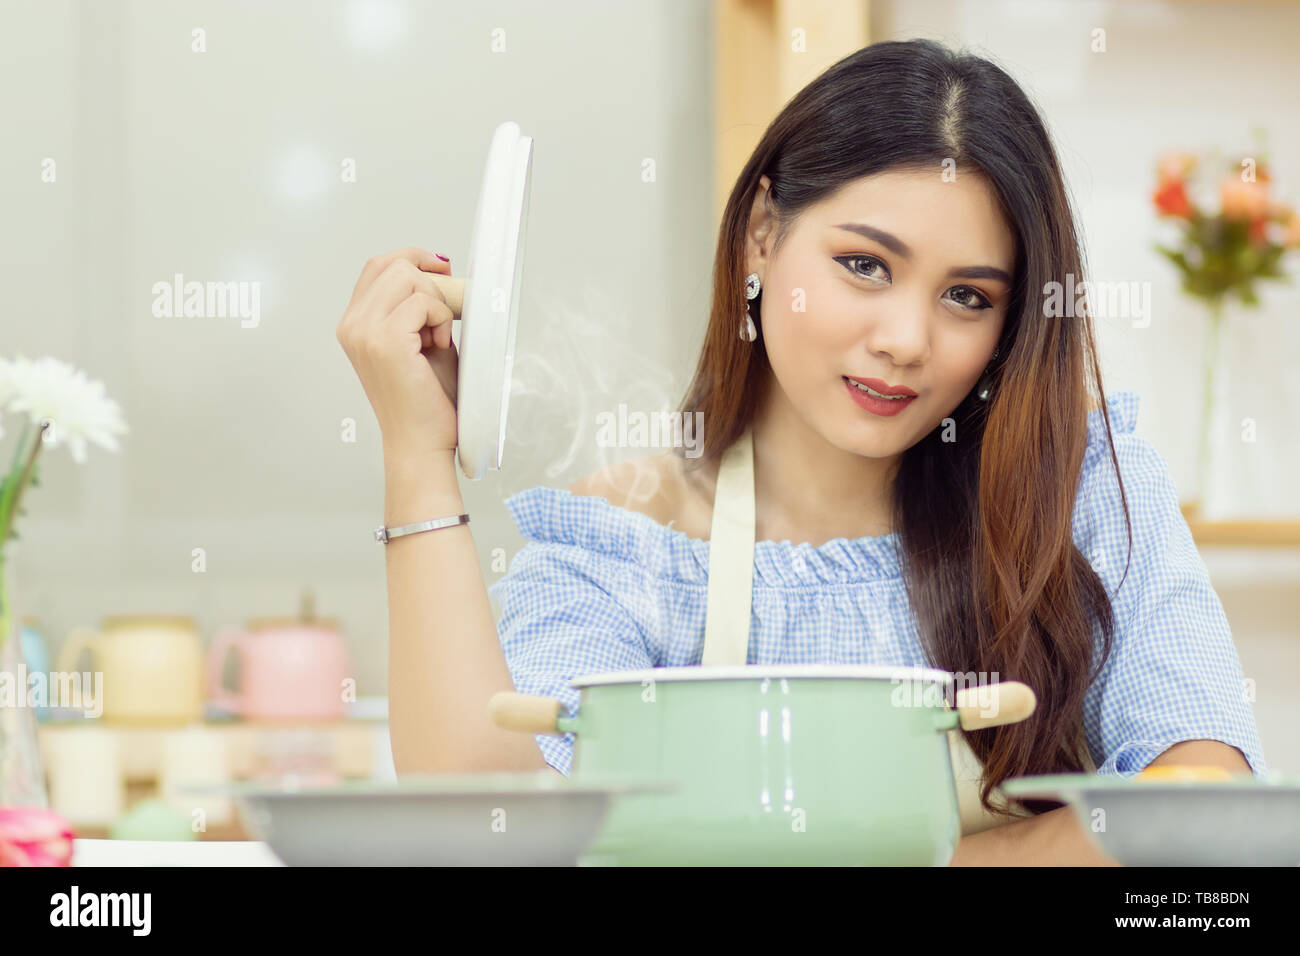 Belle femme asiatique s'asseoir à la table de la cuisine, ouvrez le couvercle de la casserole avec la vapeur de chaleur flottant. Banque D'Images